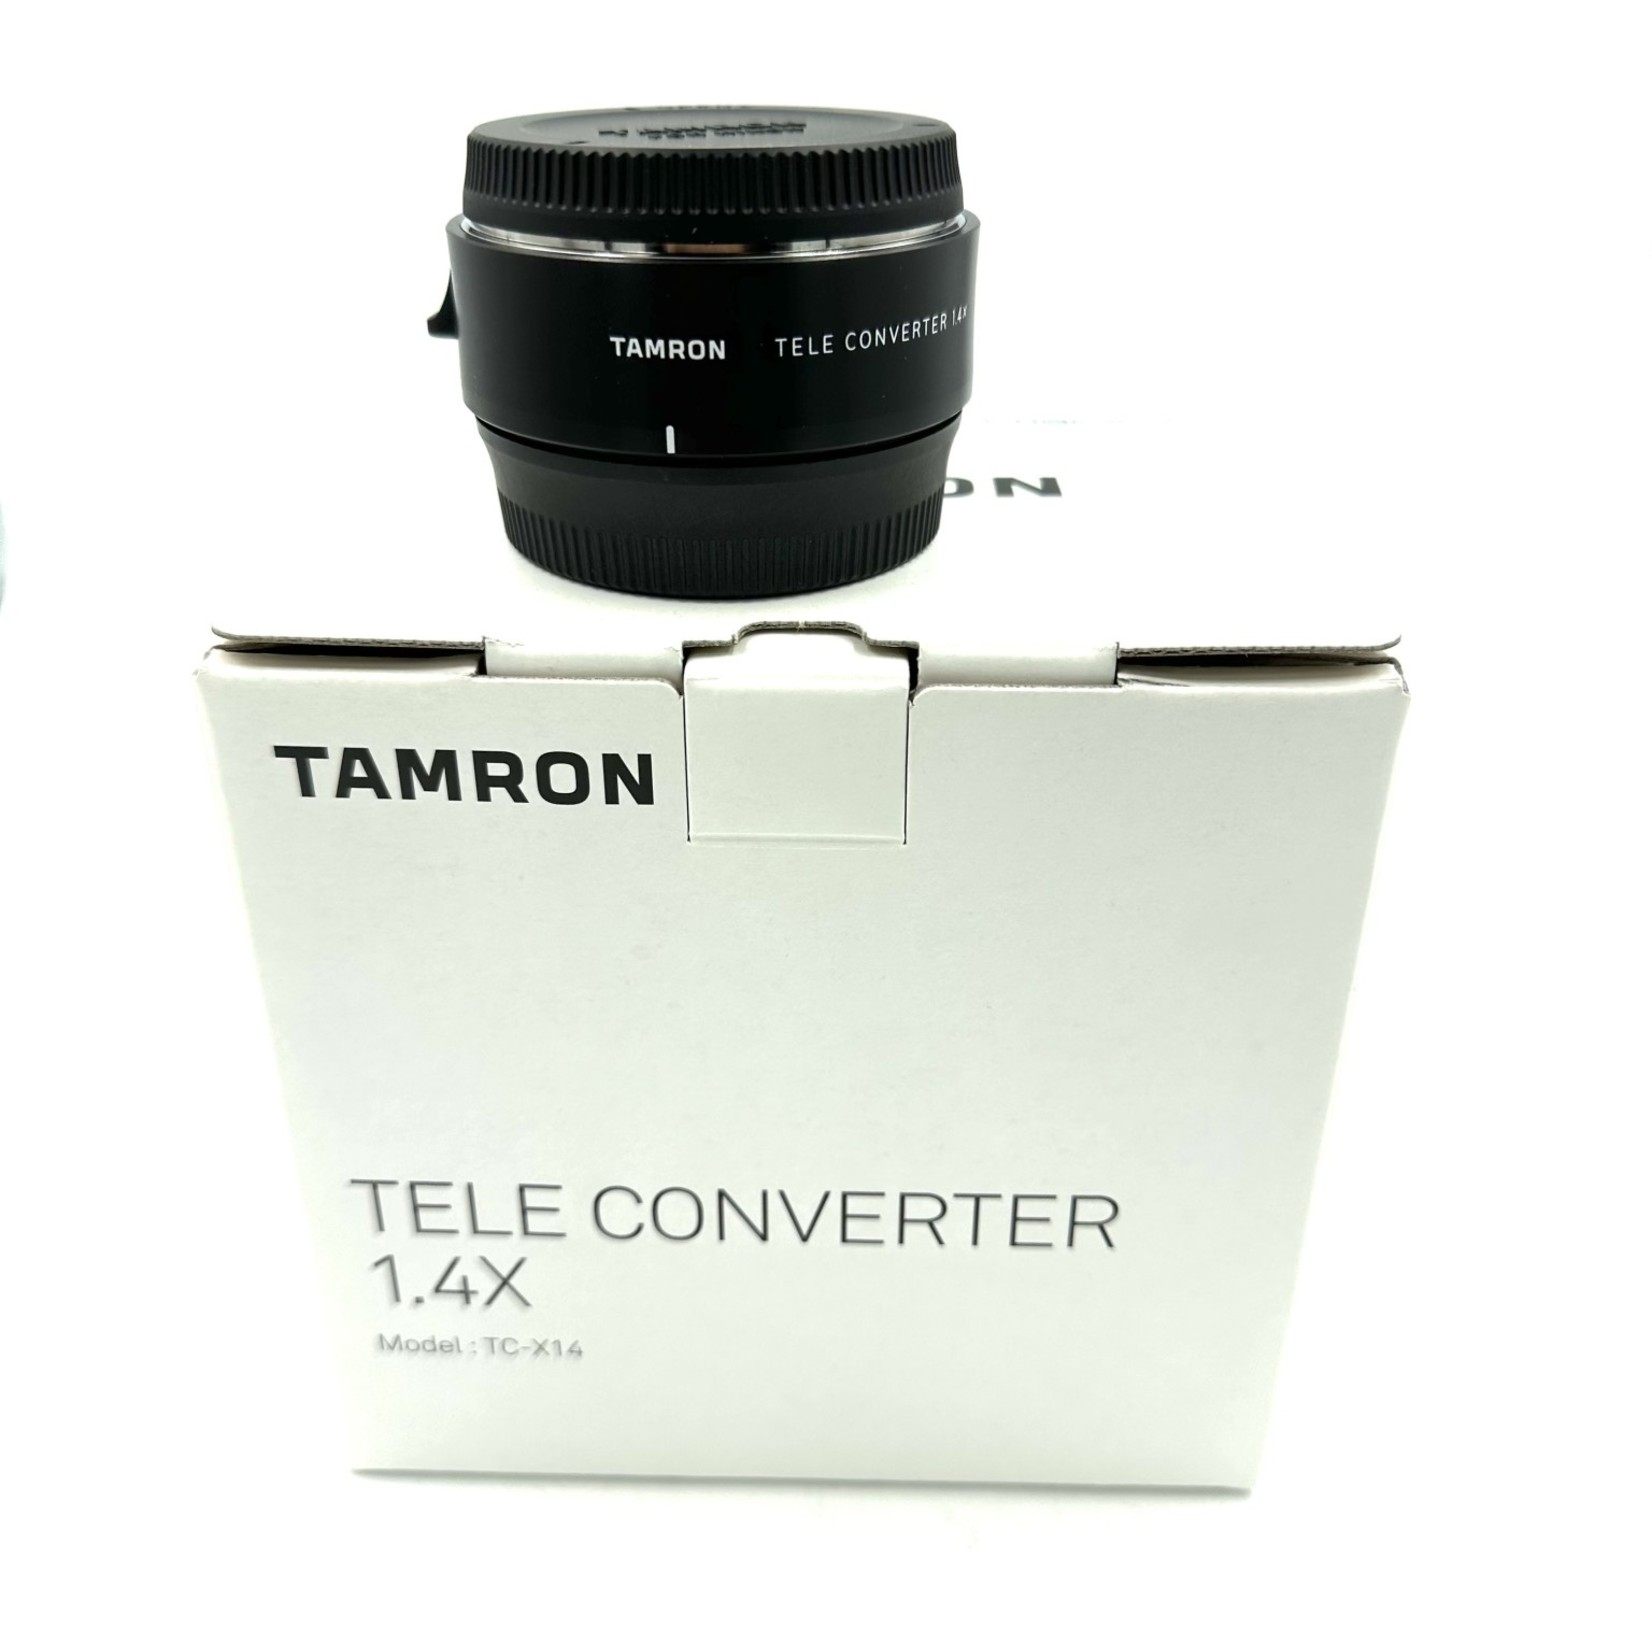 Tamron Open Box Tamron 1.4x Teleconverter for Nikon TC-X14